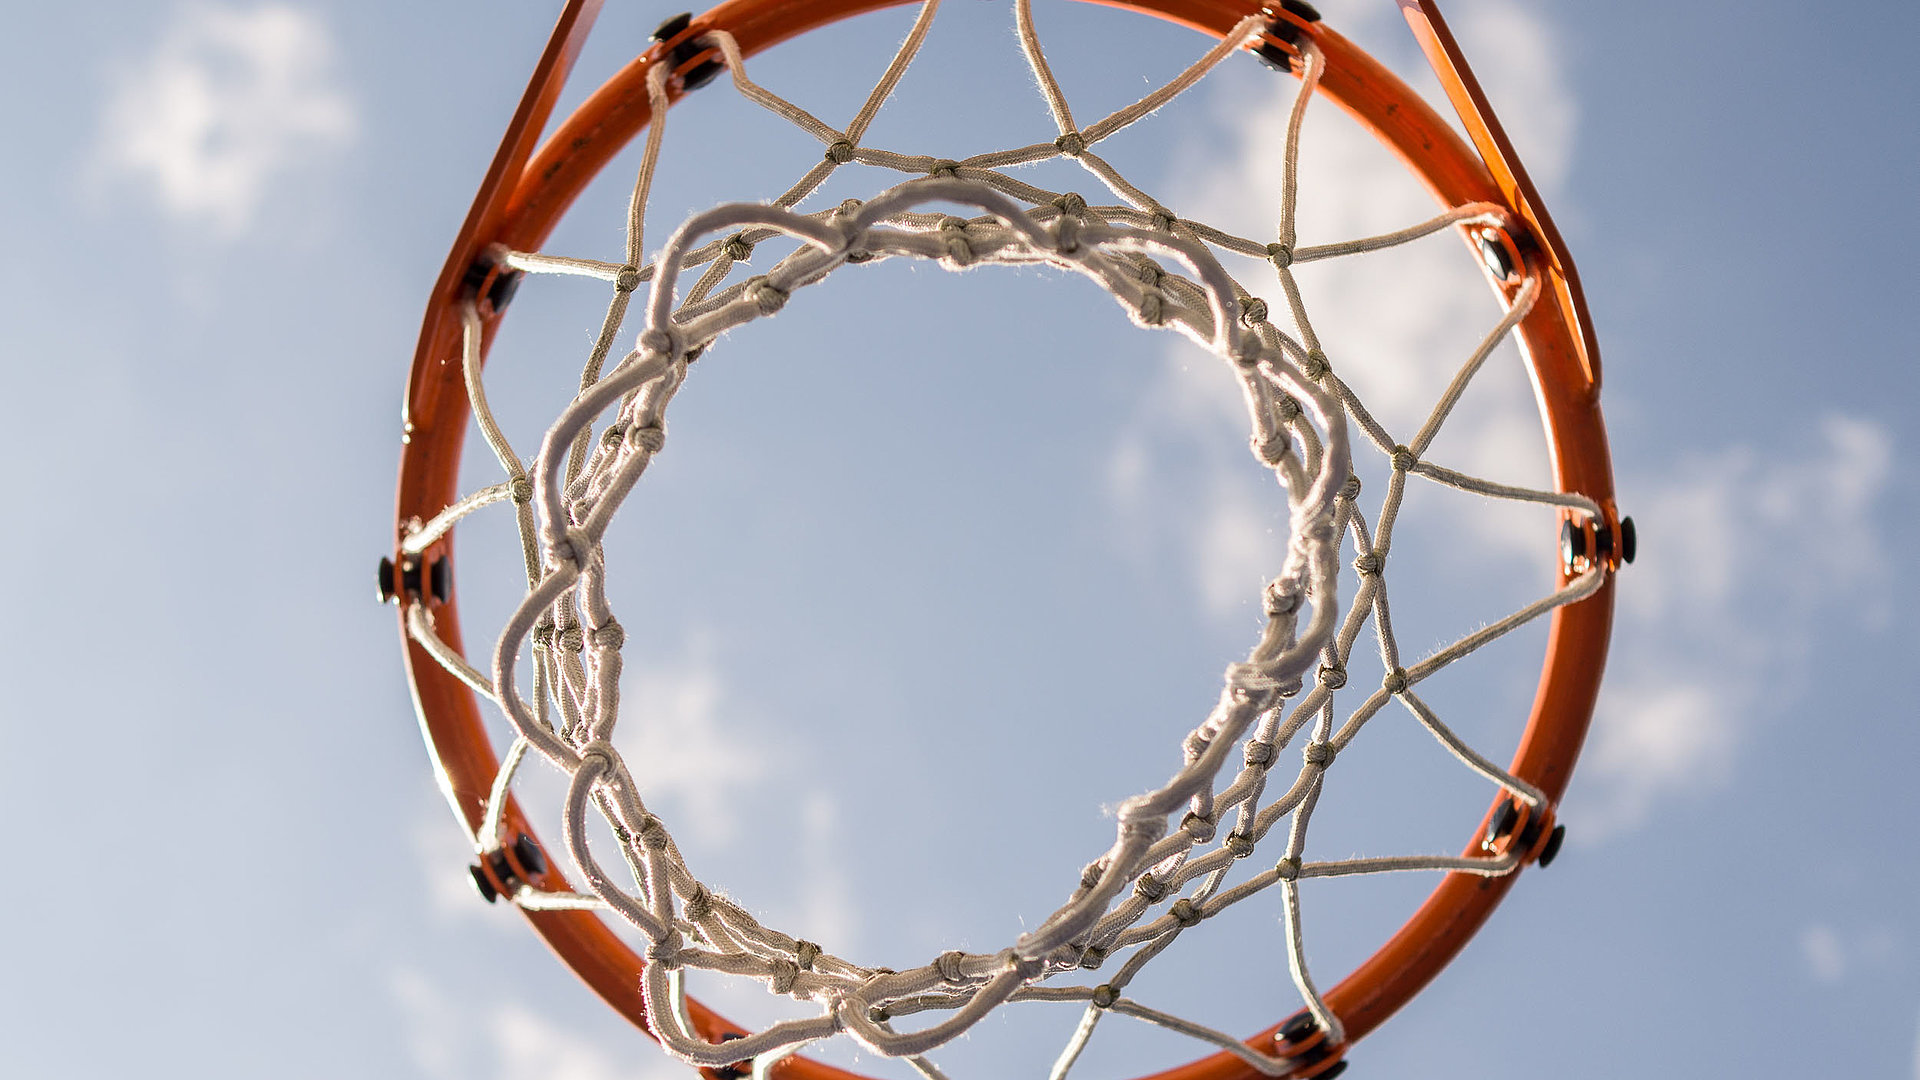 Freizeit und Sport am Chiemsee - Basketballkorb von unten unter freiem Himmel